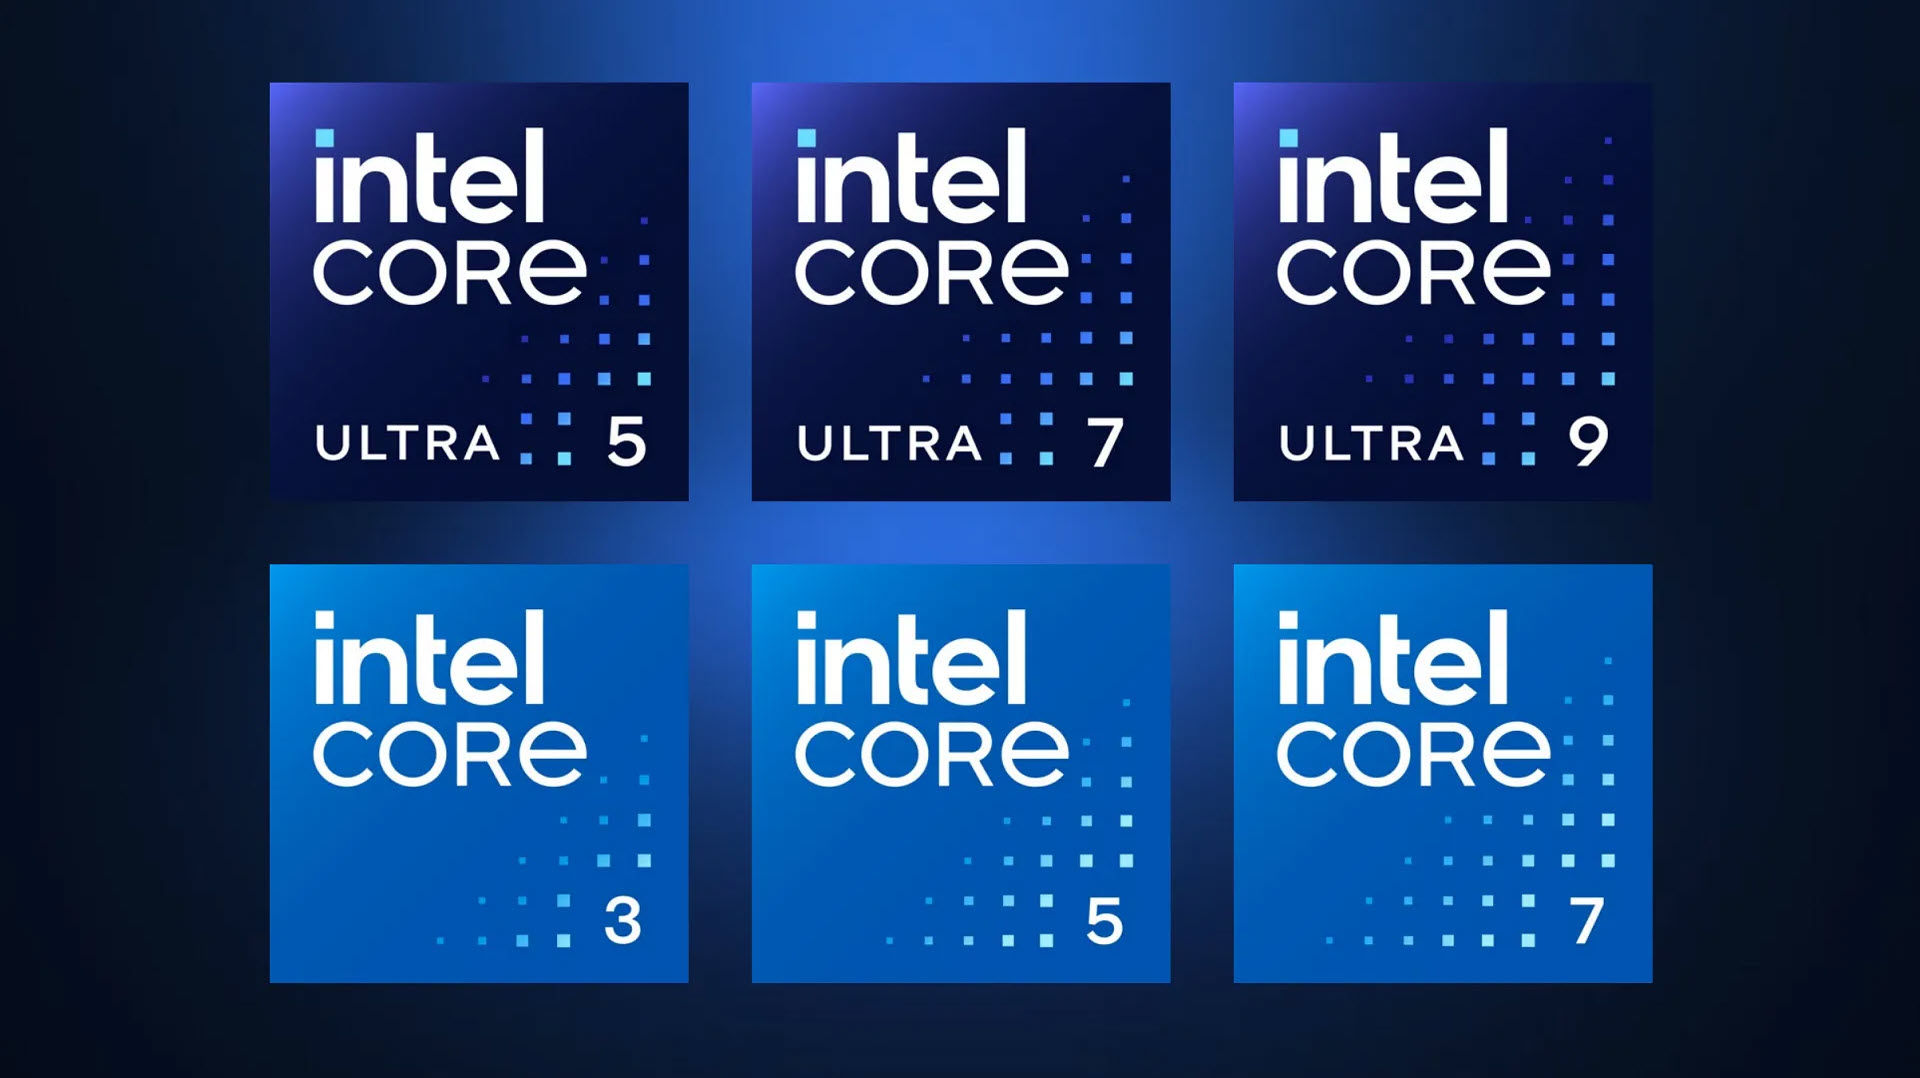 2023 06 15 23 23 45 อินเทลได้มีการเผยแบบแผนการตั้งชื่อโปรเซสเซอร์ใหม่ของกลุ่ม Client Computing ของอินเทล เนื่องในโอกาสการเปิดตัว Intel® Core™ Ultra และชิปประมวลผล Intel Core รุ่นใหม่